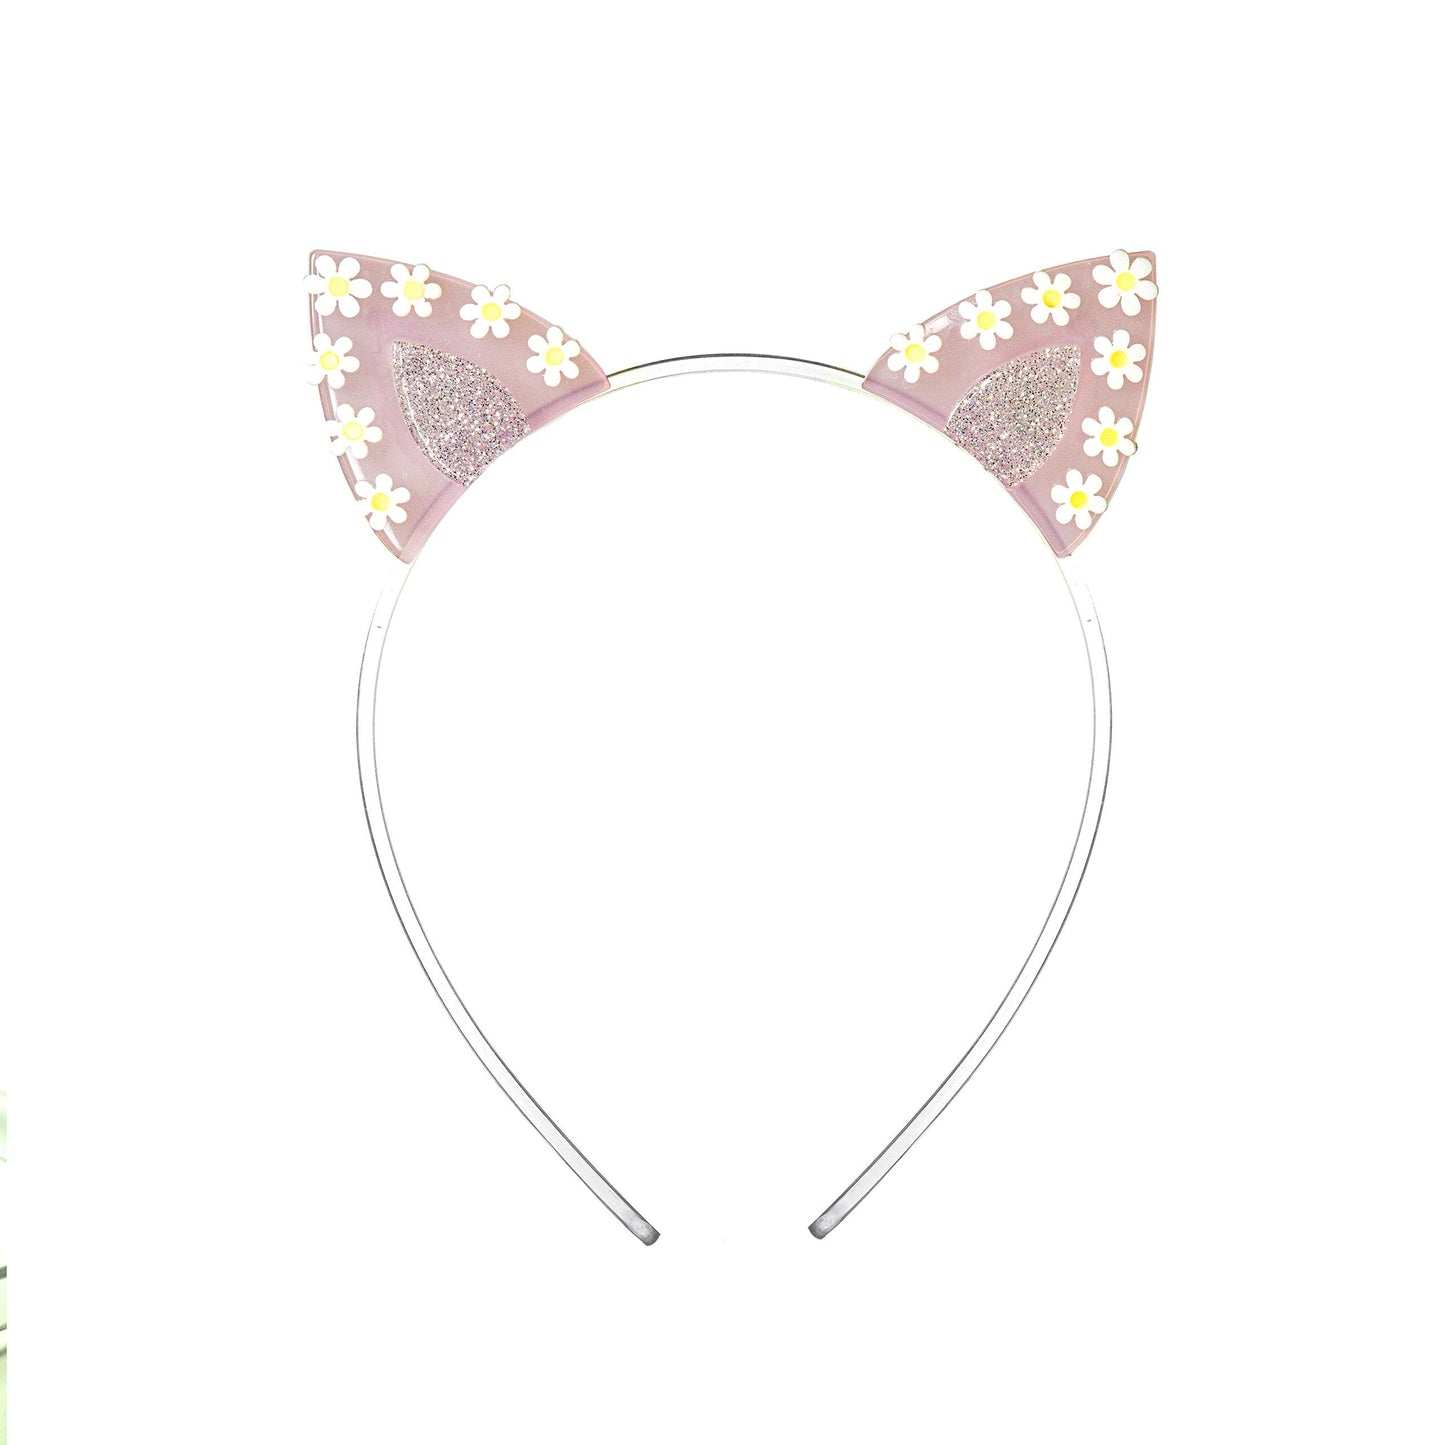 Lilies & Roses NY-Daisy Ears Pink Headband